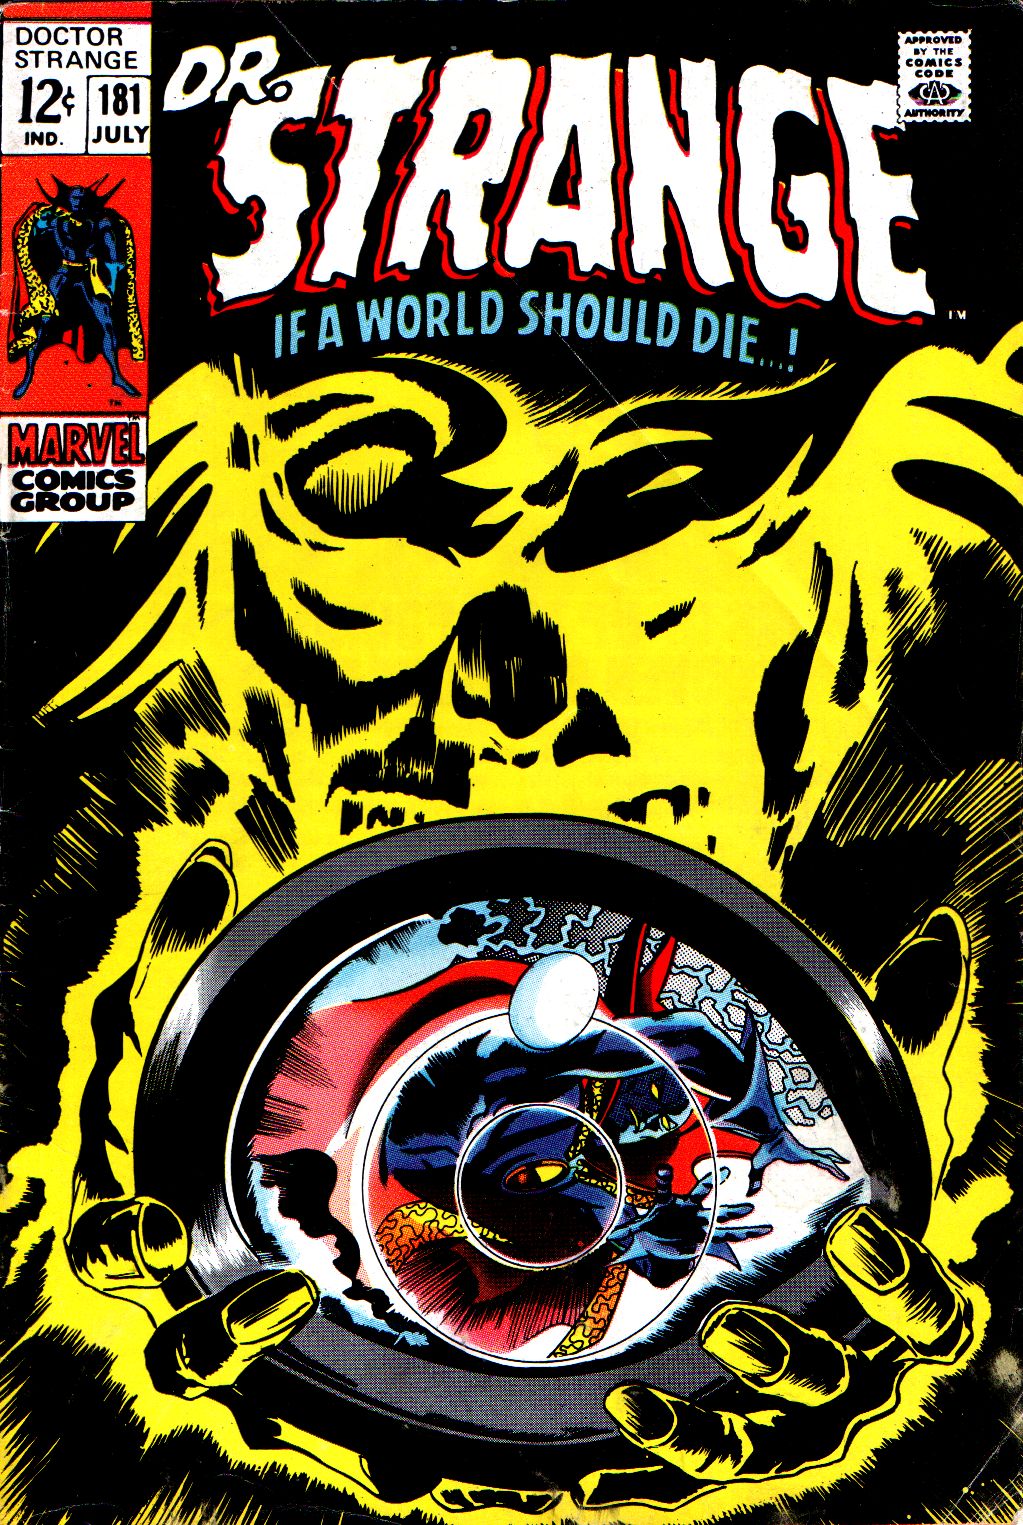 Read online Marvel Masterworks: Doctor Strange comic -  Issue # TPB 3 - 255